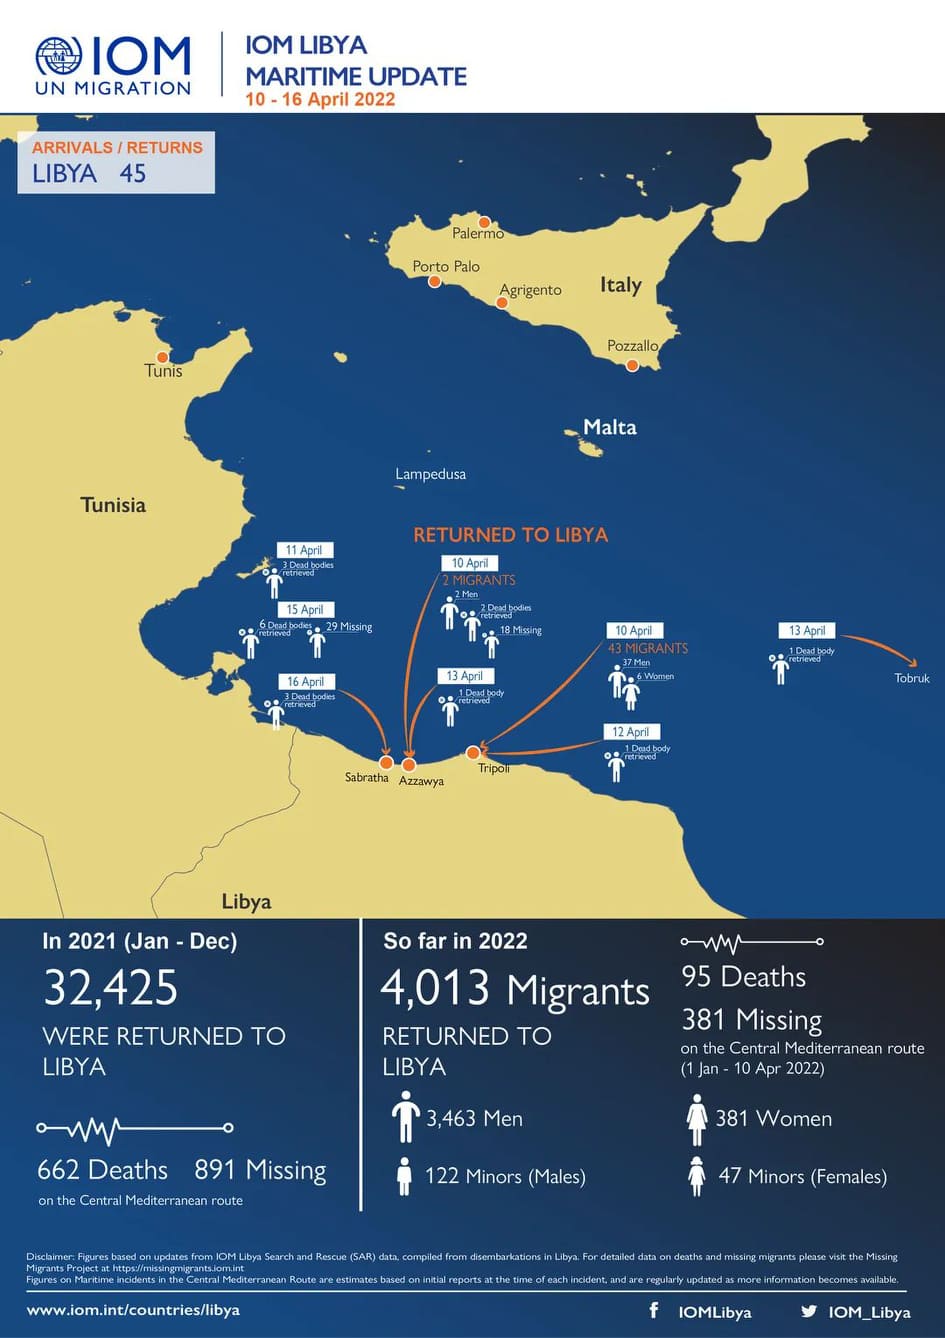 إعادة 4013 مهاجرًا إلى ليبيا ومصرع 95 وفقدان 381 خلال عام 2022